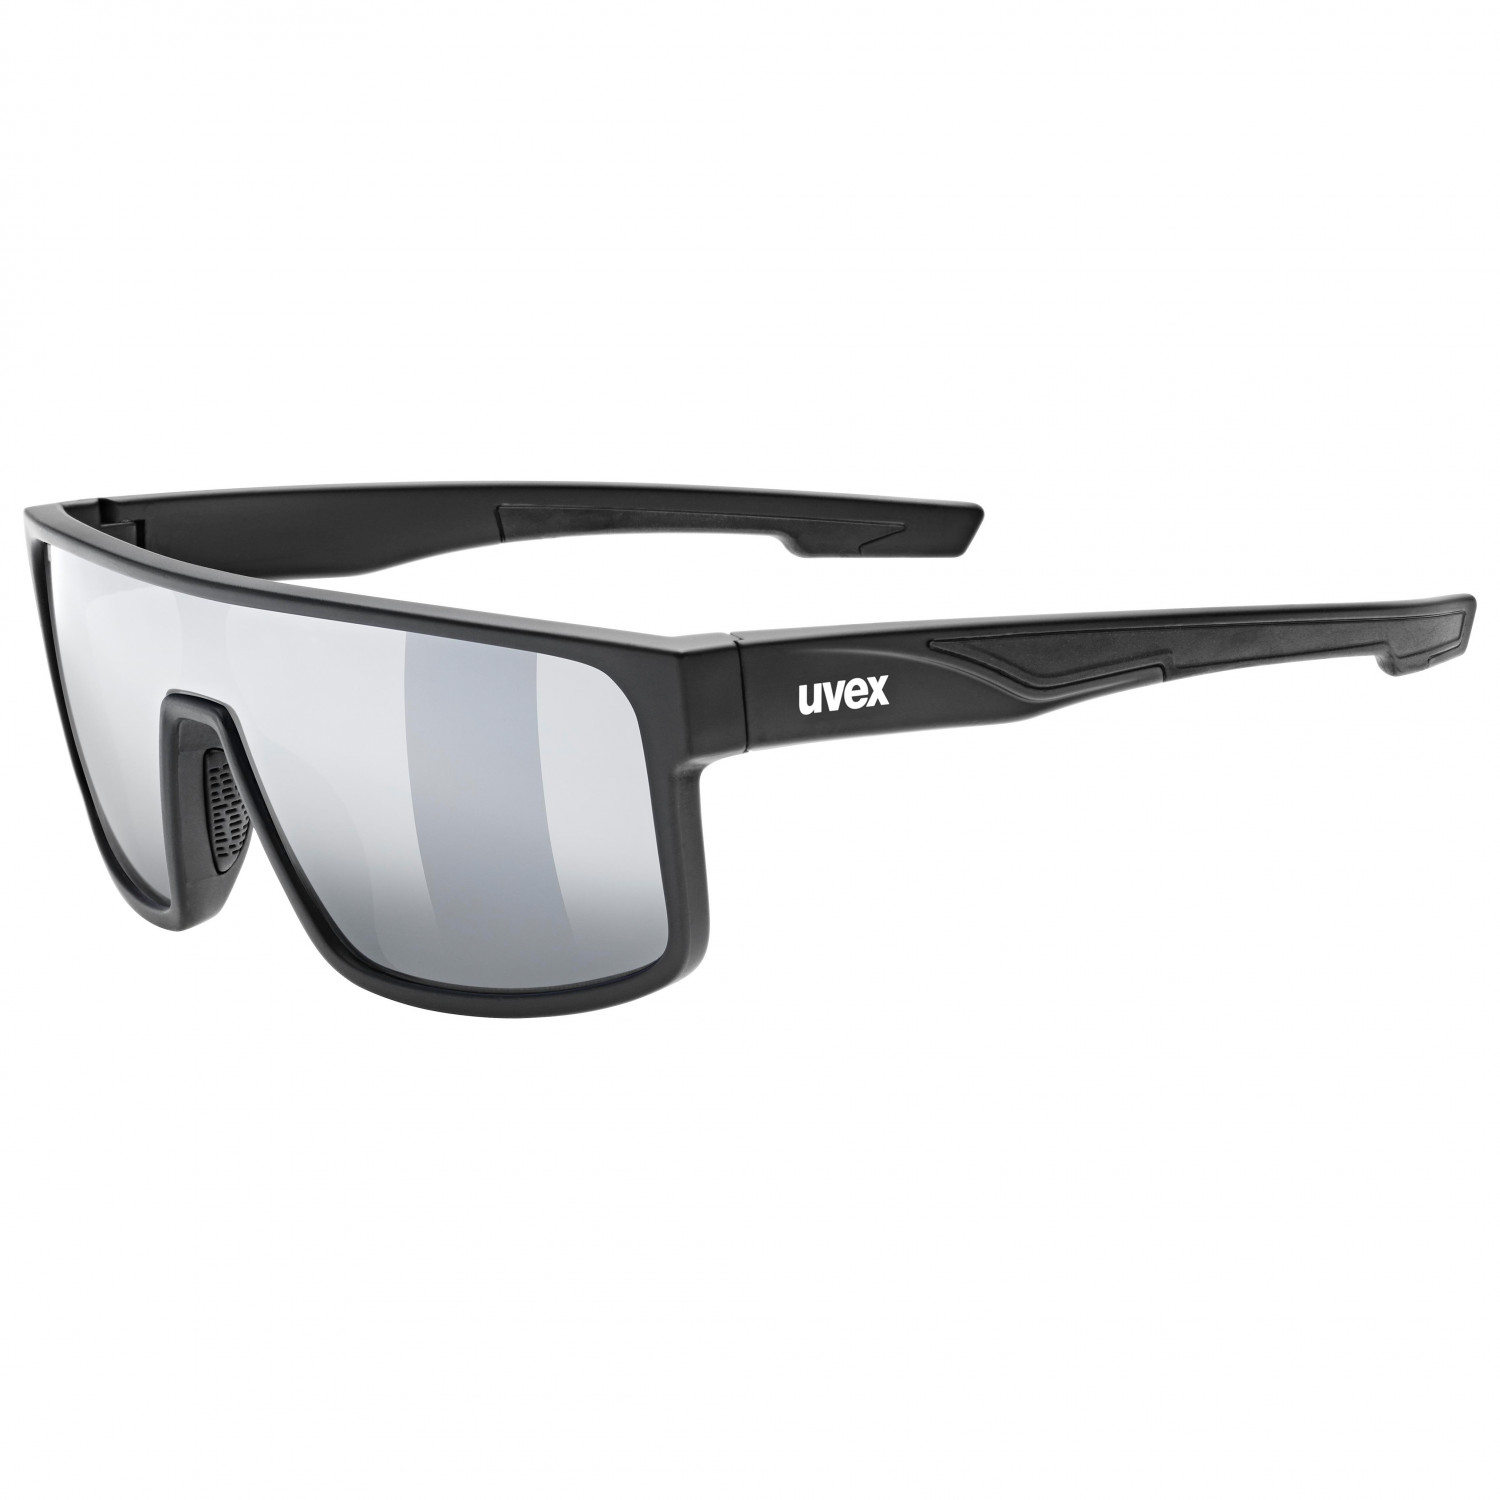 Солнцезащитные очки Uvex LGL 51 Mirror Cat 3, цвет Black Matt солнцезащитные очки uvex lgl 39 mirror cat 3 цвет grey mat blue